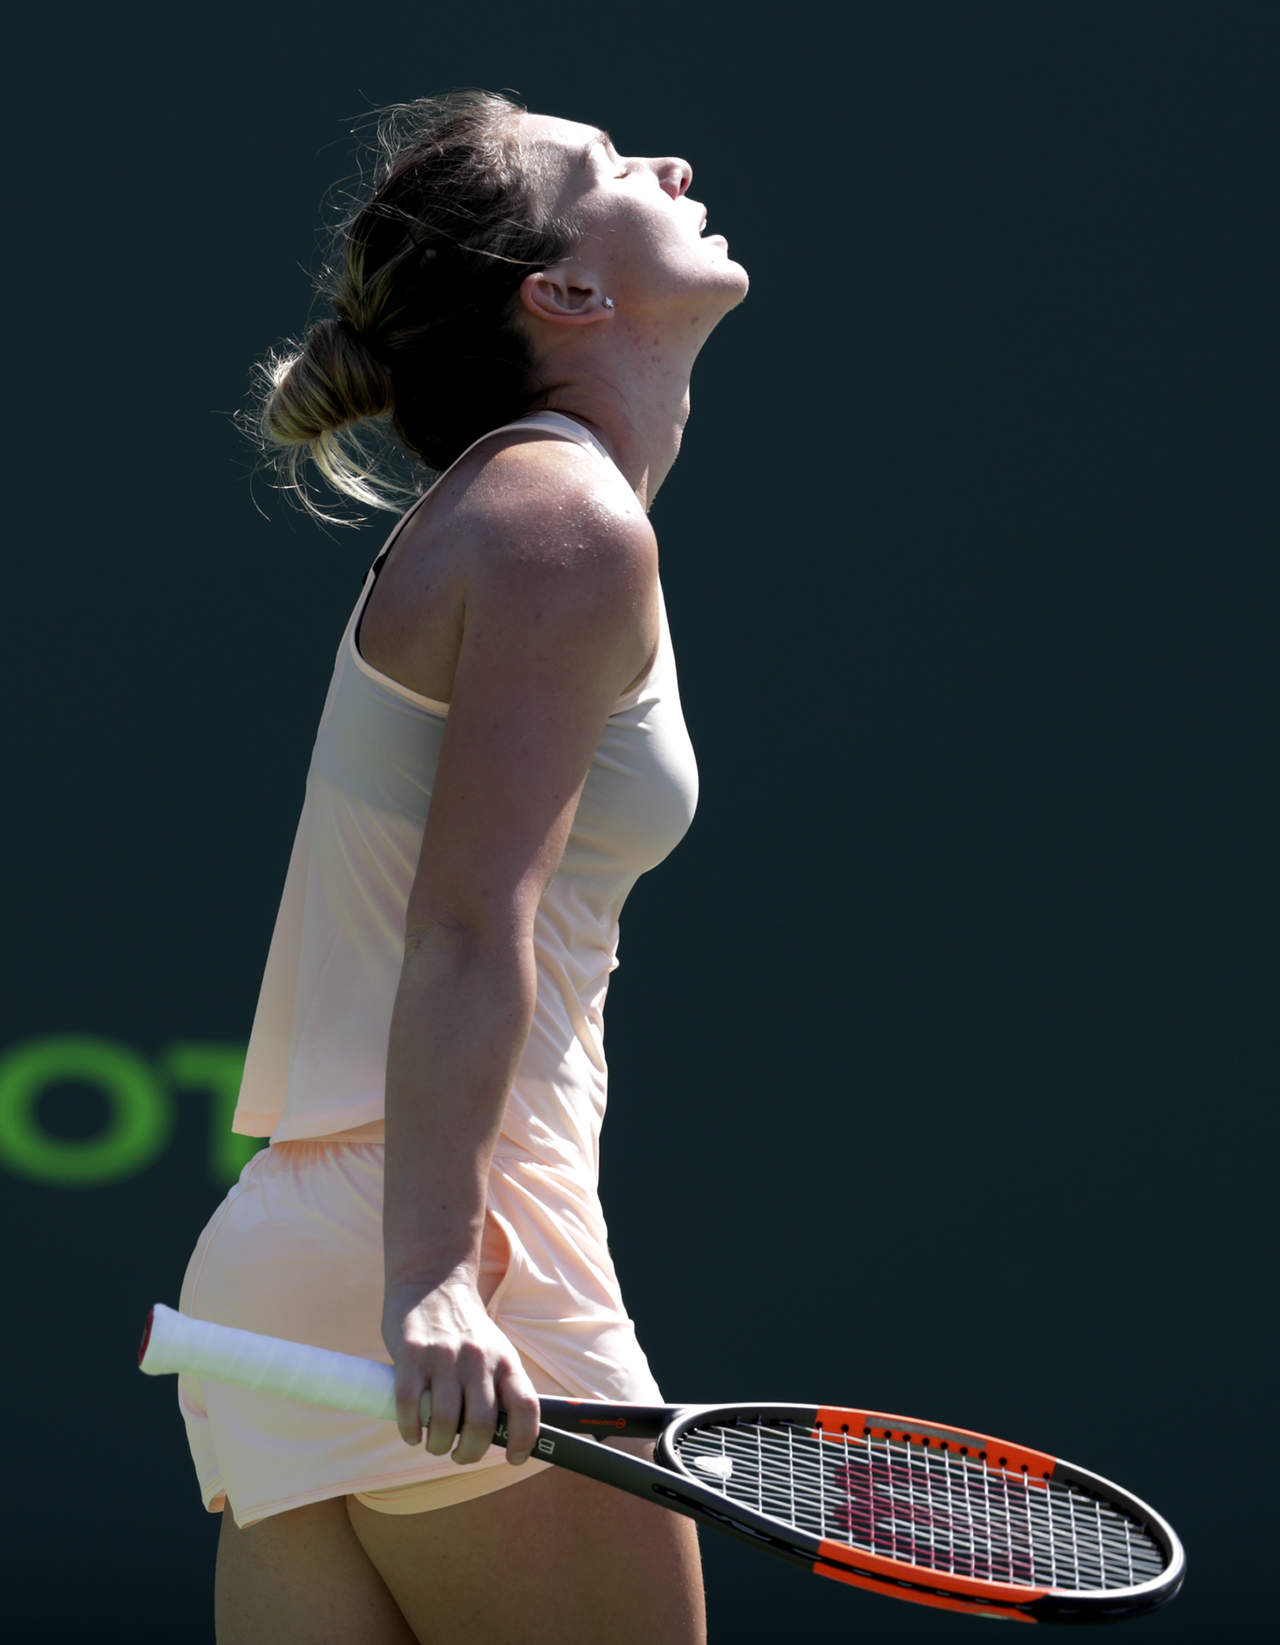 La polaca Agnieszka Radwanska dejó fuera del torneo en tercera ronda a la rumana Simona Halep, máxima favorita. (AP)